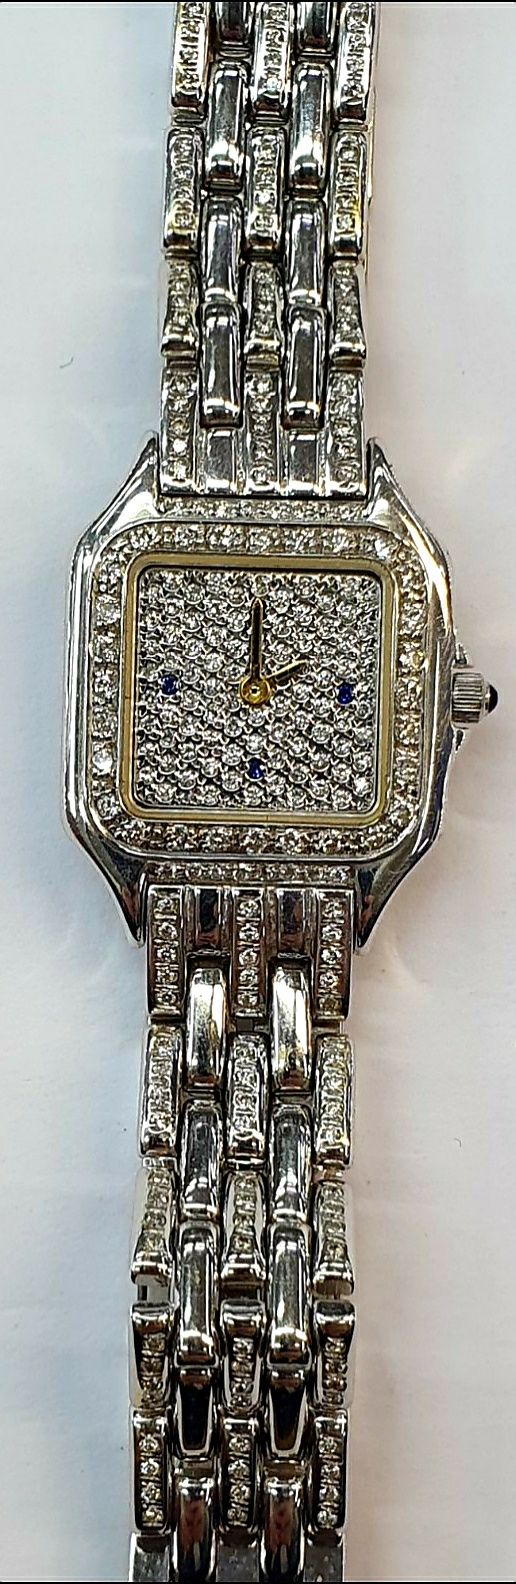 Продам золотые часы с браслетом и вставками бриллиантов